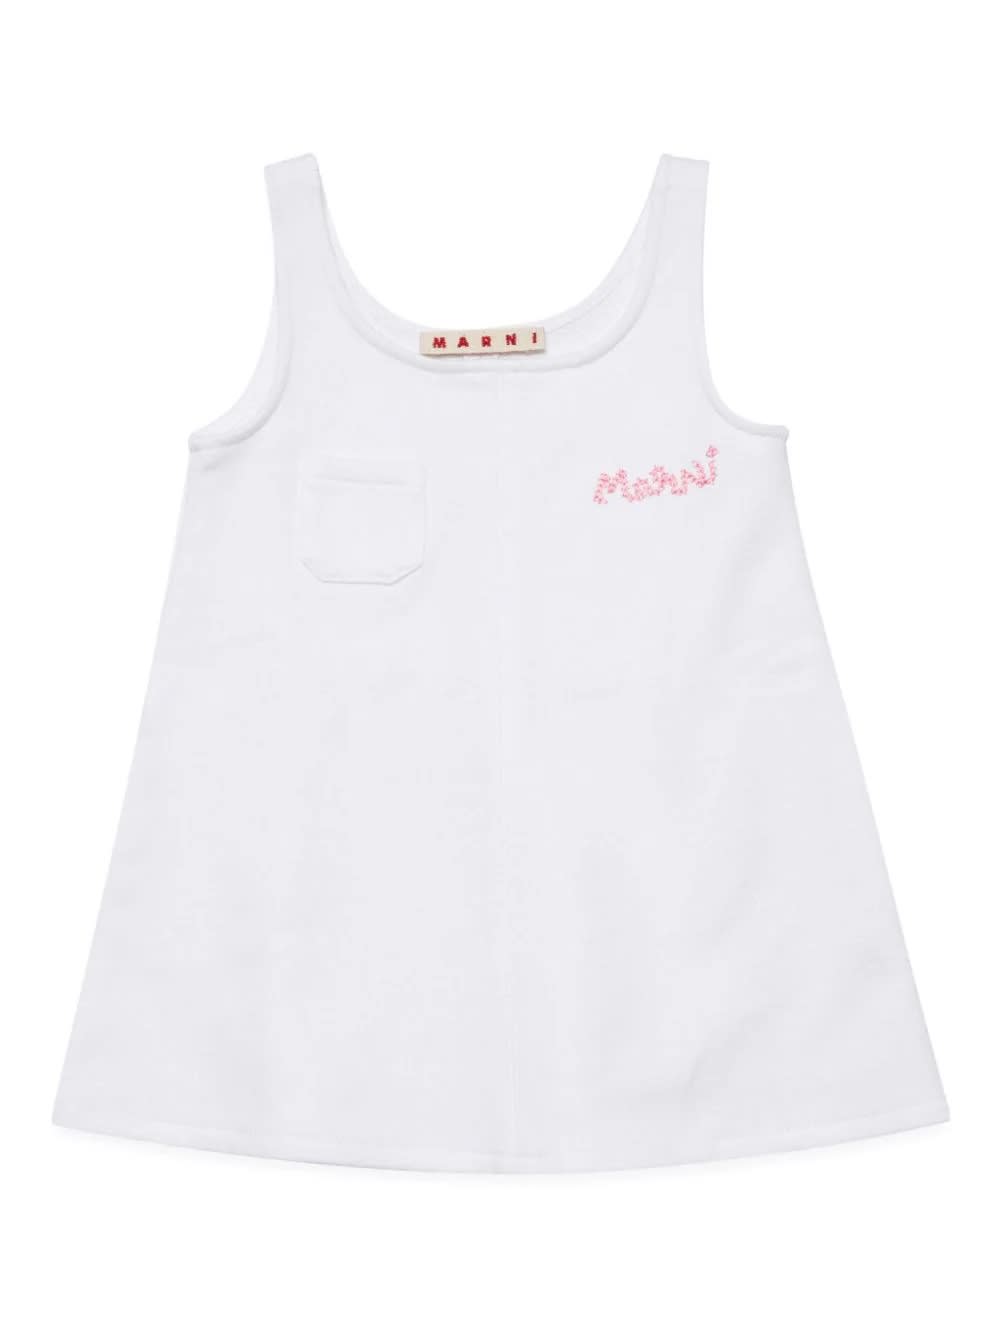 Marni Babies' Abito Con Logo In White